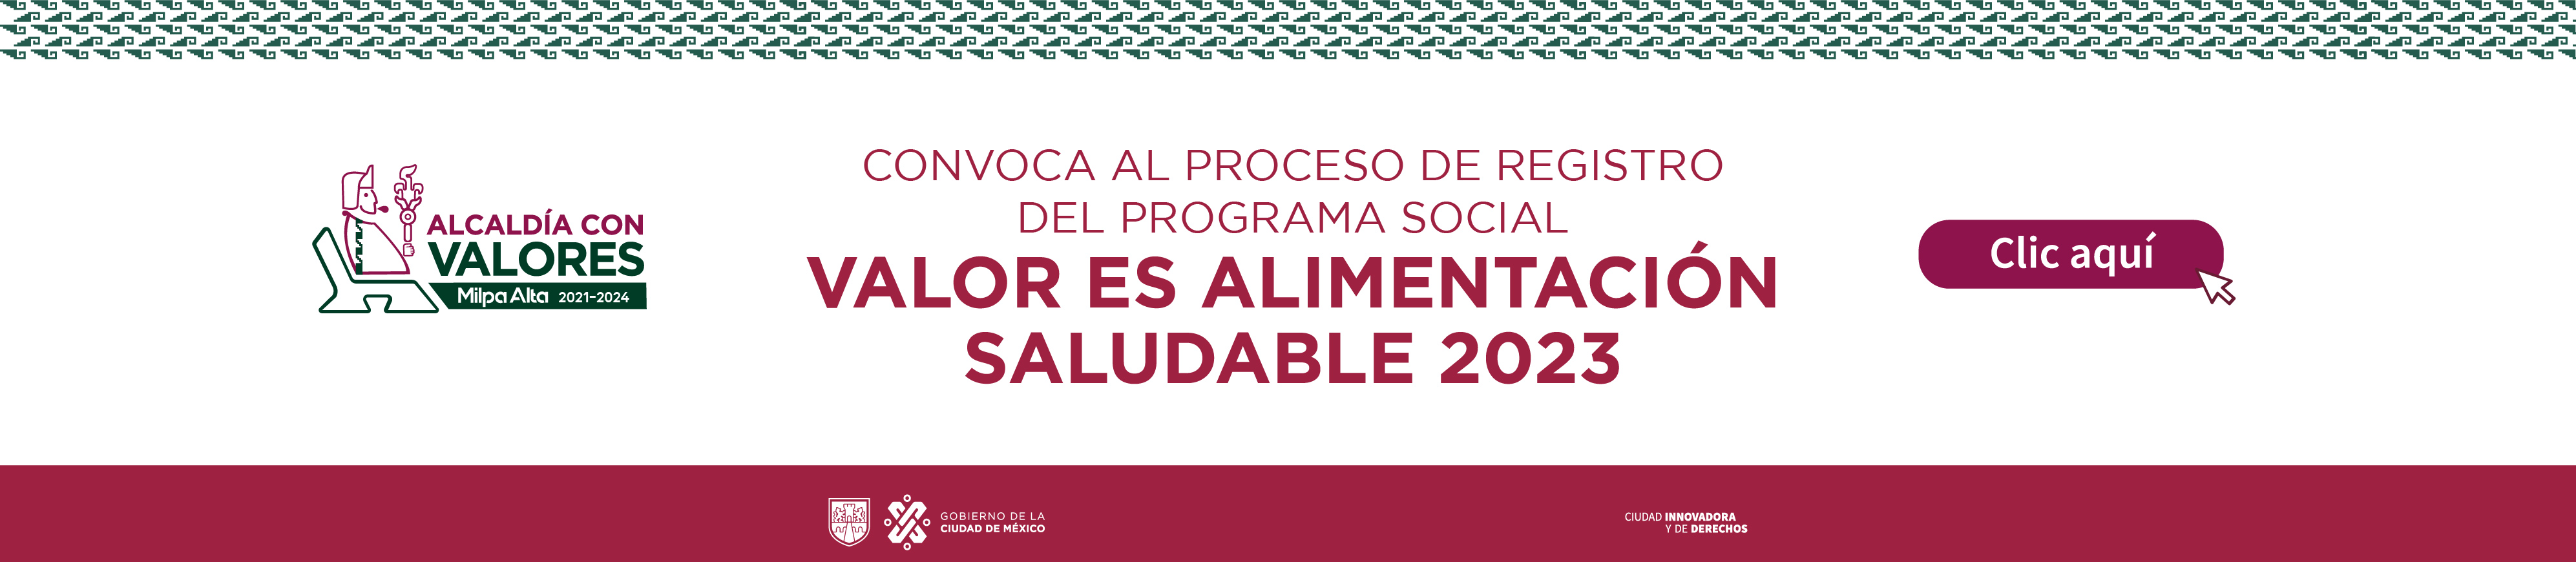 Convocatoria Programa Social Calor es Alimentación Saludable 2023